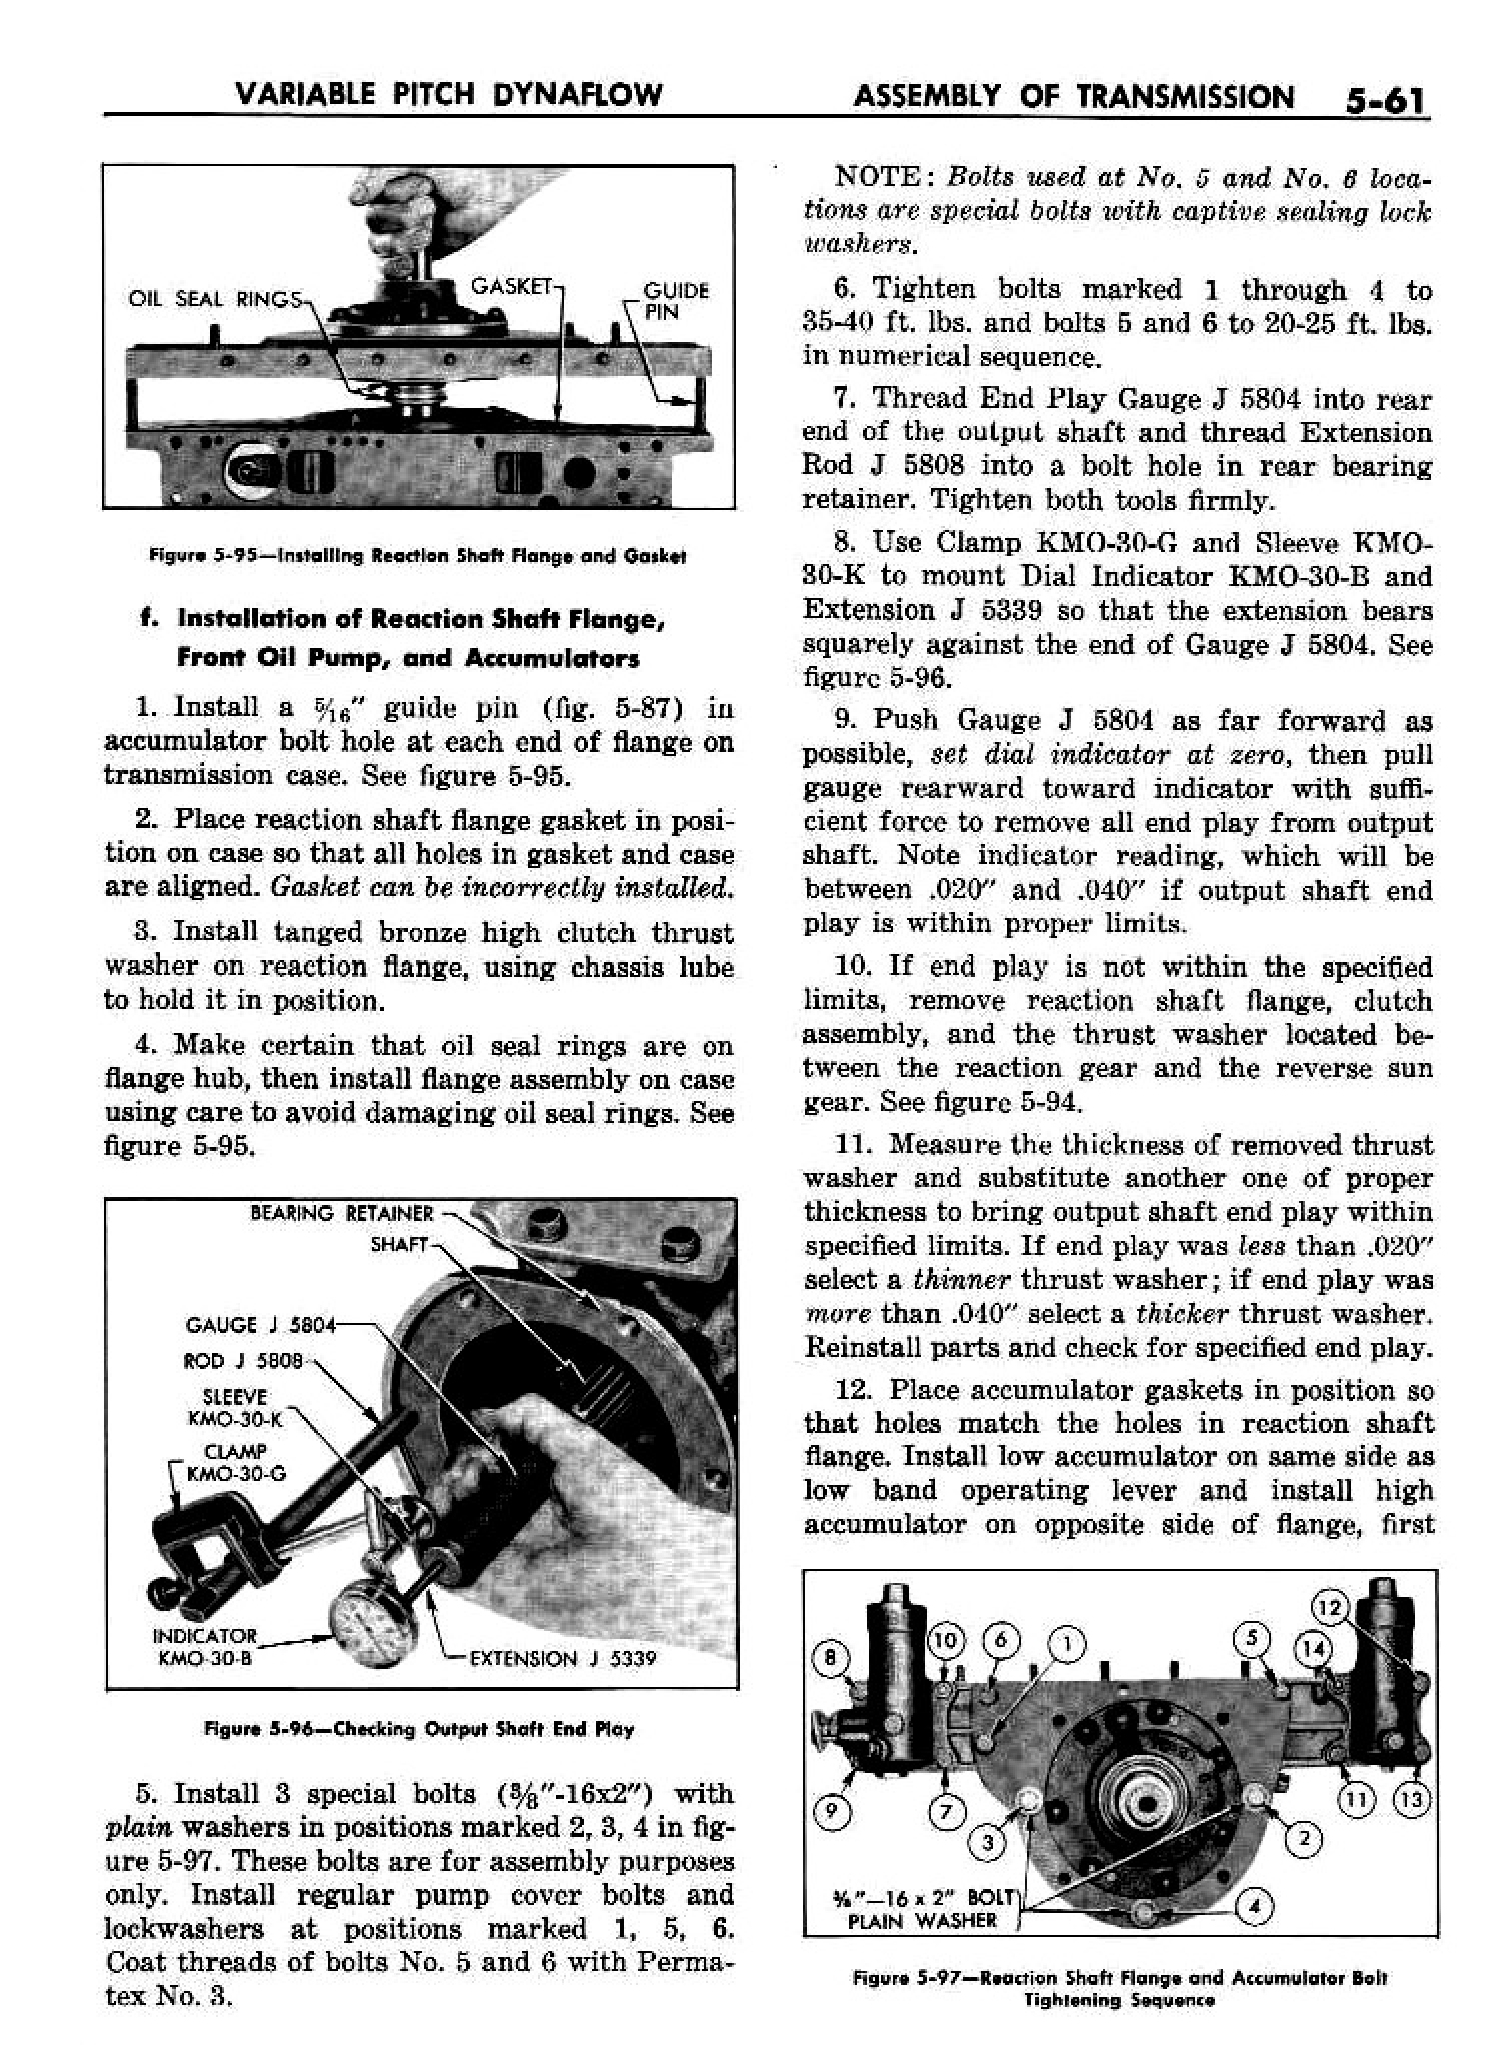 n_06 1958 Buick Shop Manual - Dynaflow_61.jpg